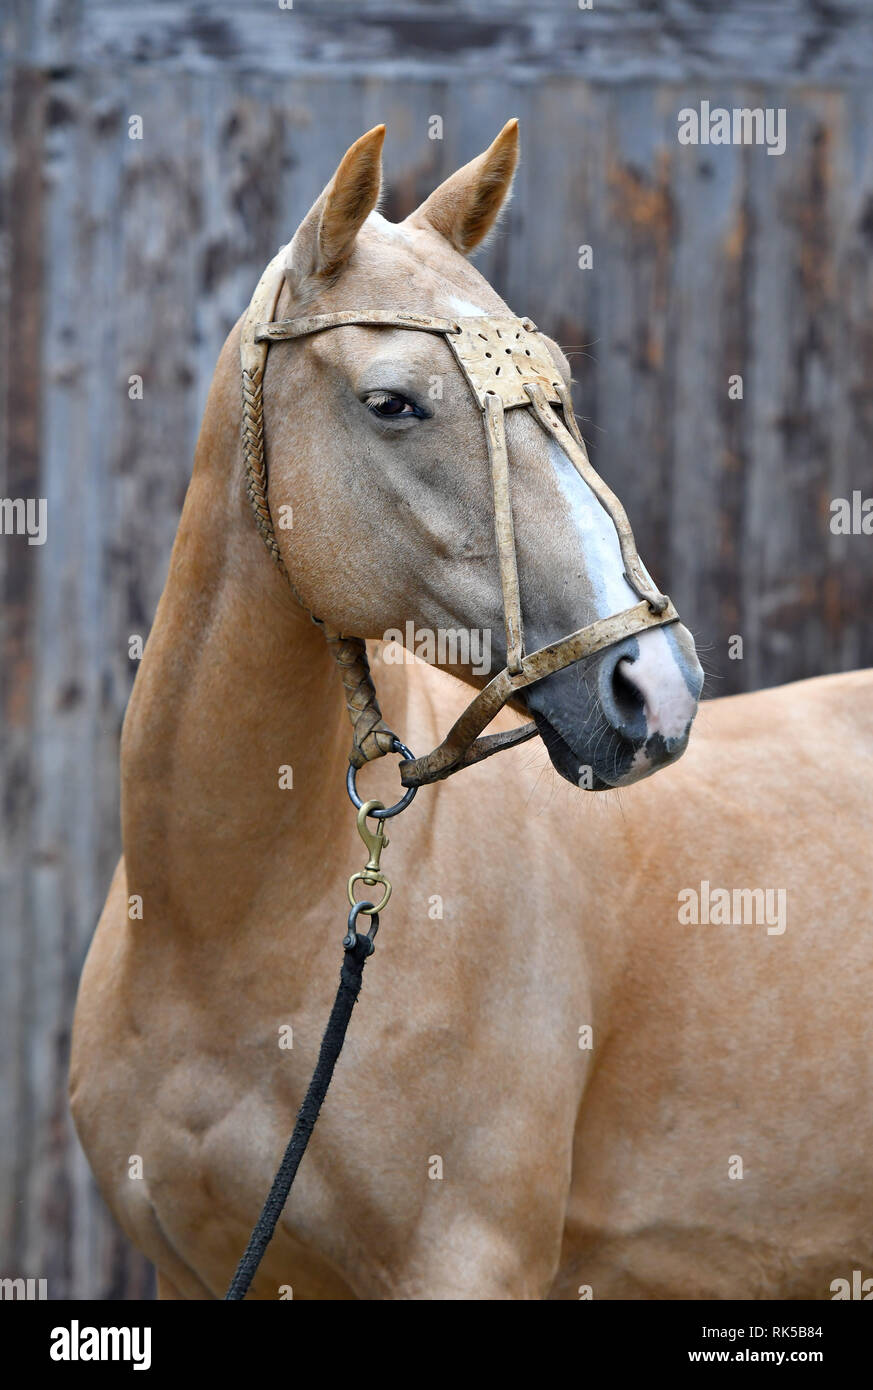 À cheval polo cuir dos-nu a l'air sur le côté tout en se tenant debout à côté d'un mur. Vertical, latéral, portrait. Banque D'Images